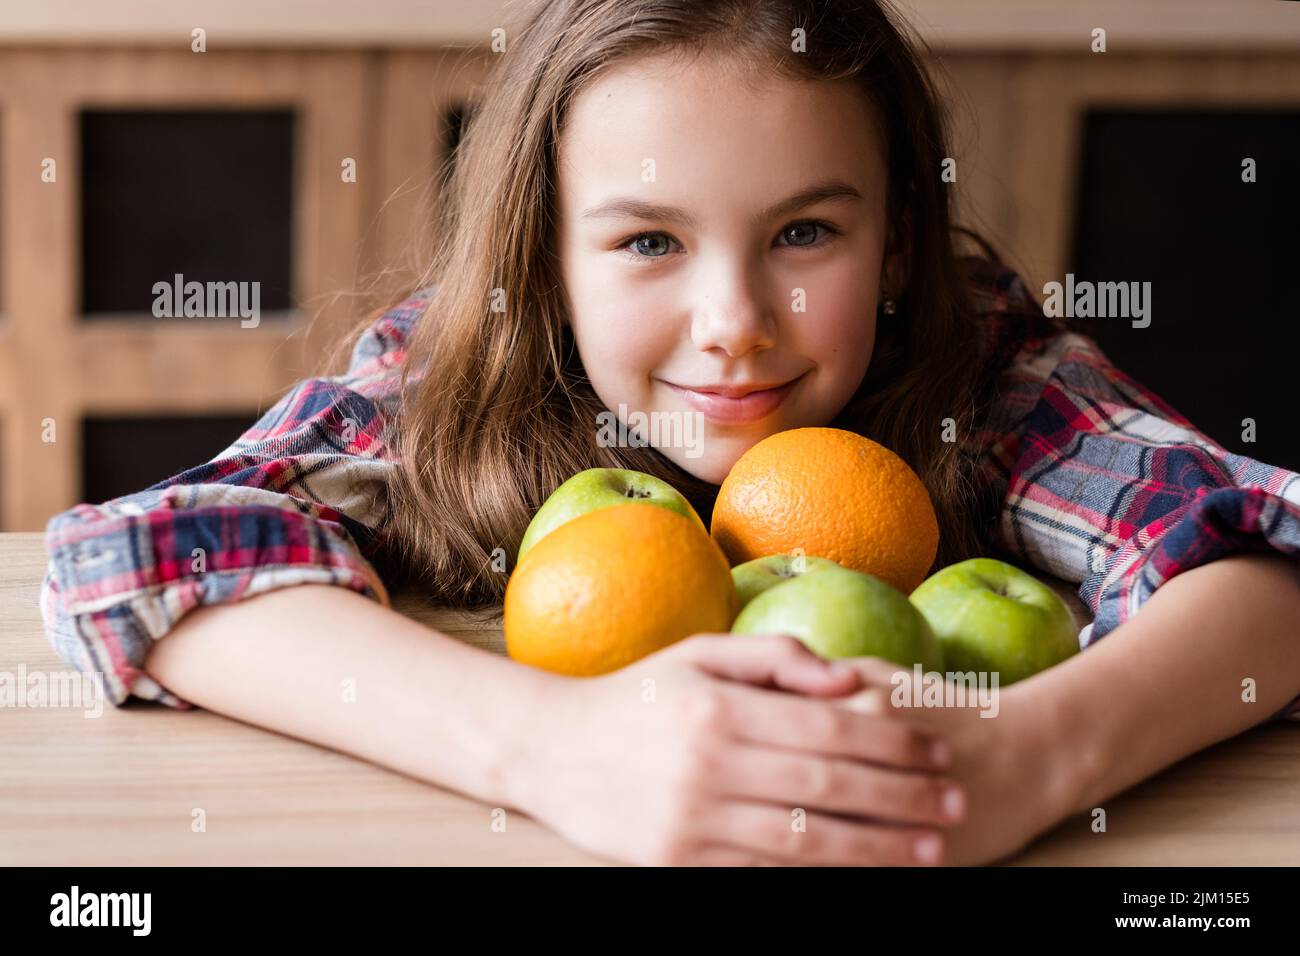 alimentazione equilibrata bambino frutta benessere arancio Foto Stock